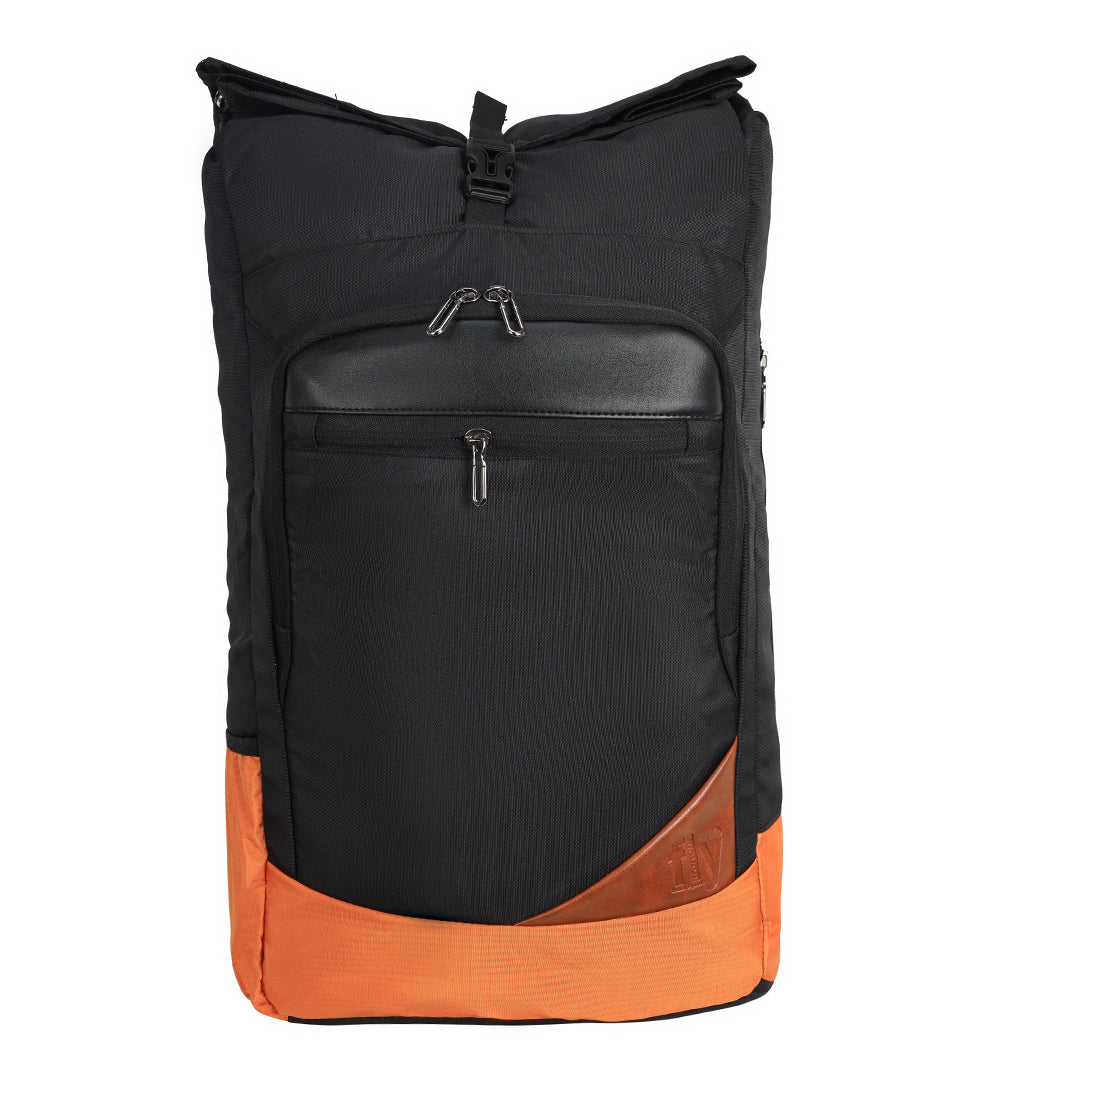 Medium Roll Top Backpack: 22L